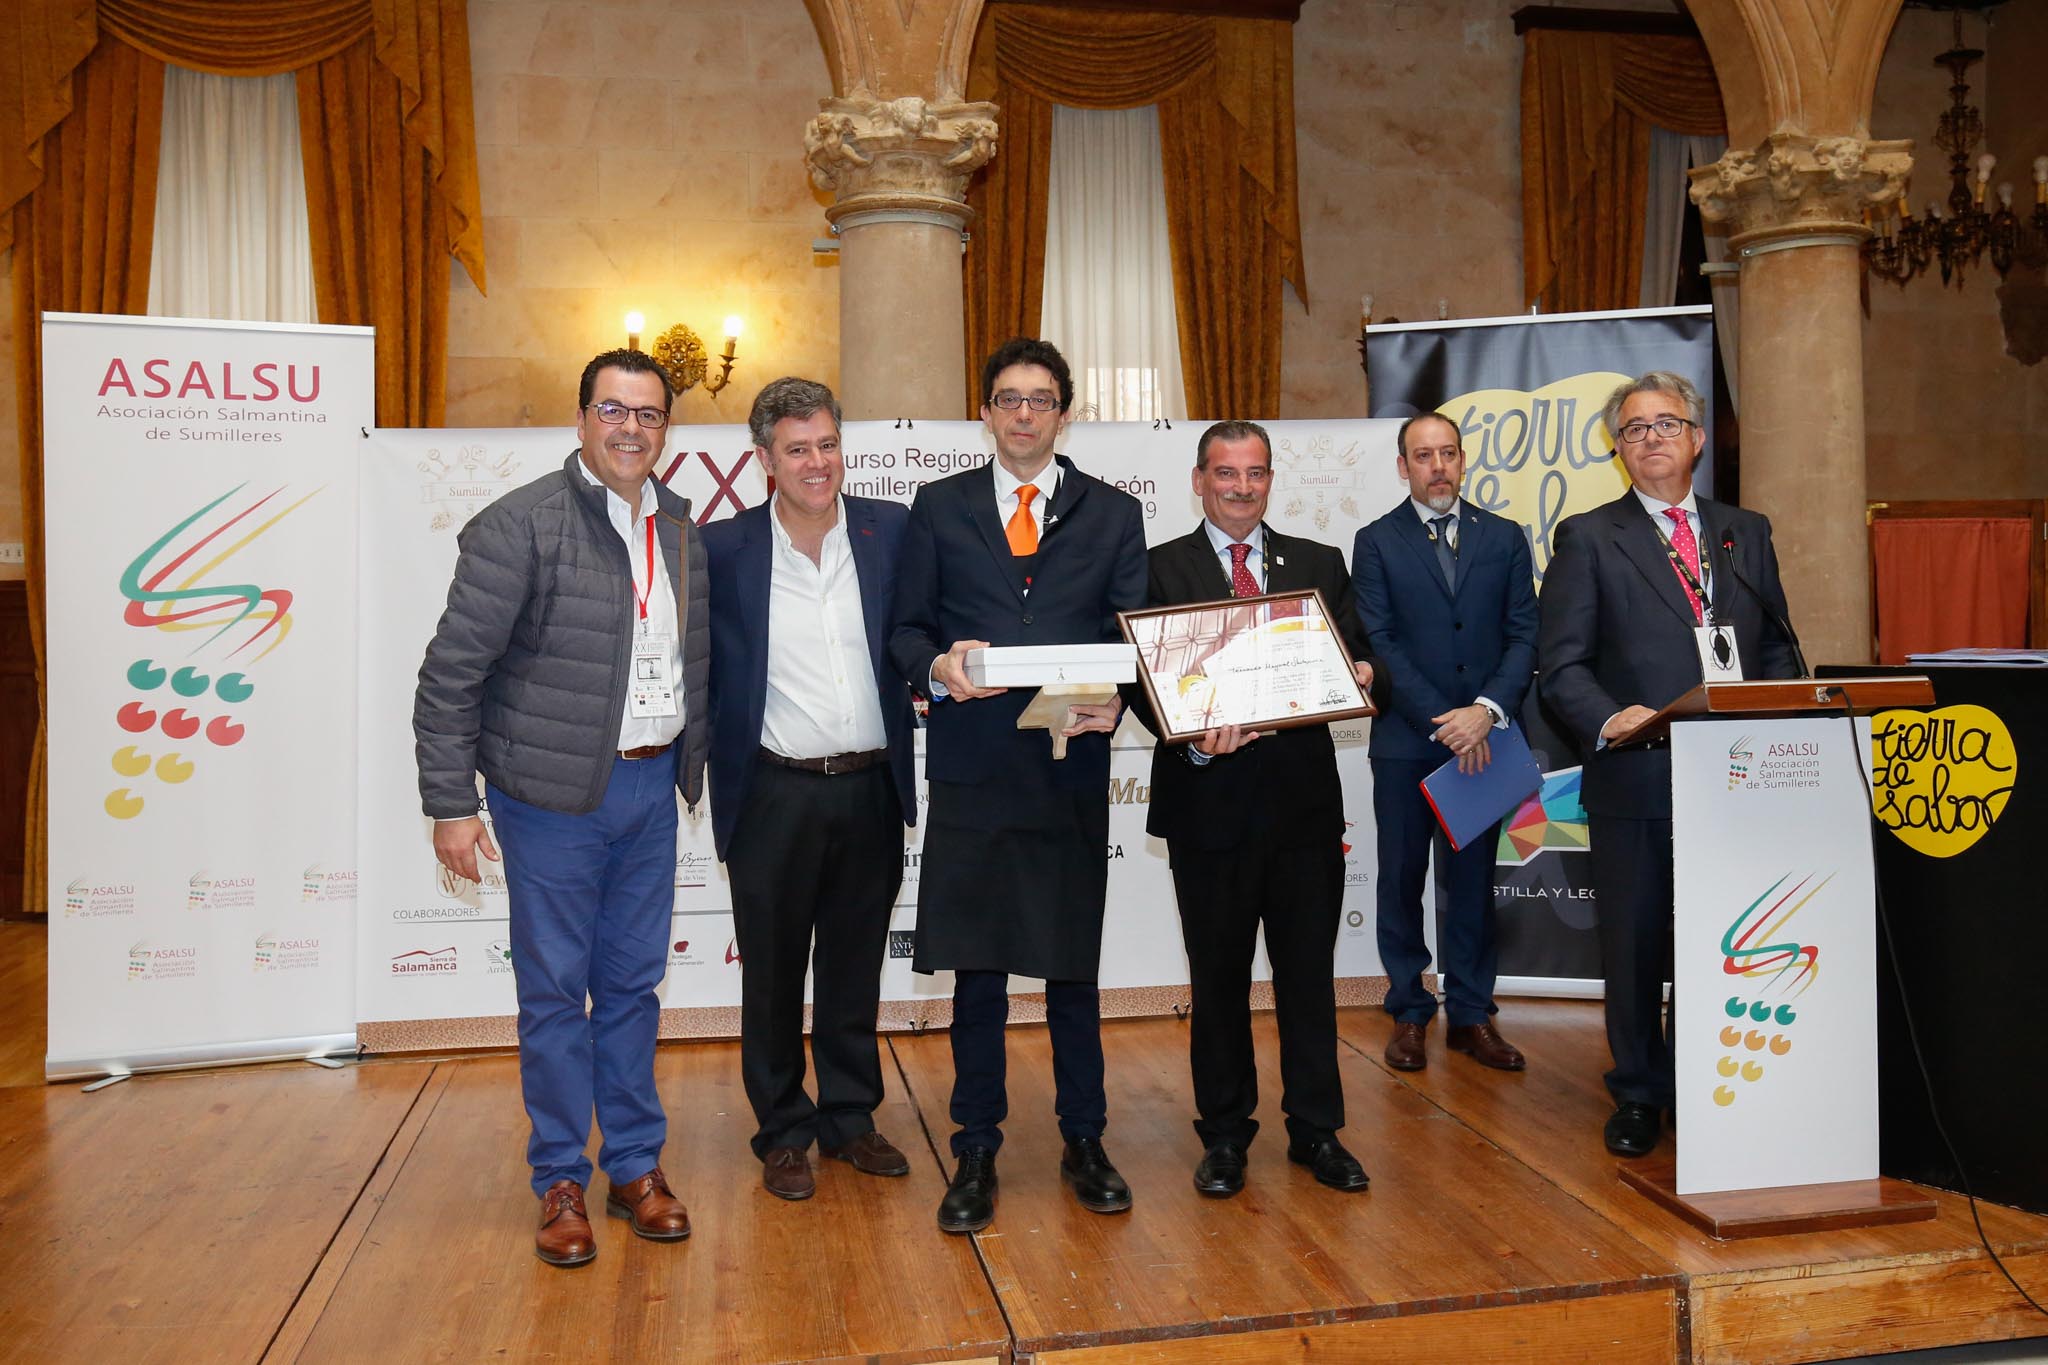 Fotos: XXI Concurso de Regional de sumilleres en el Casino de Salamanca